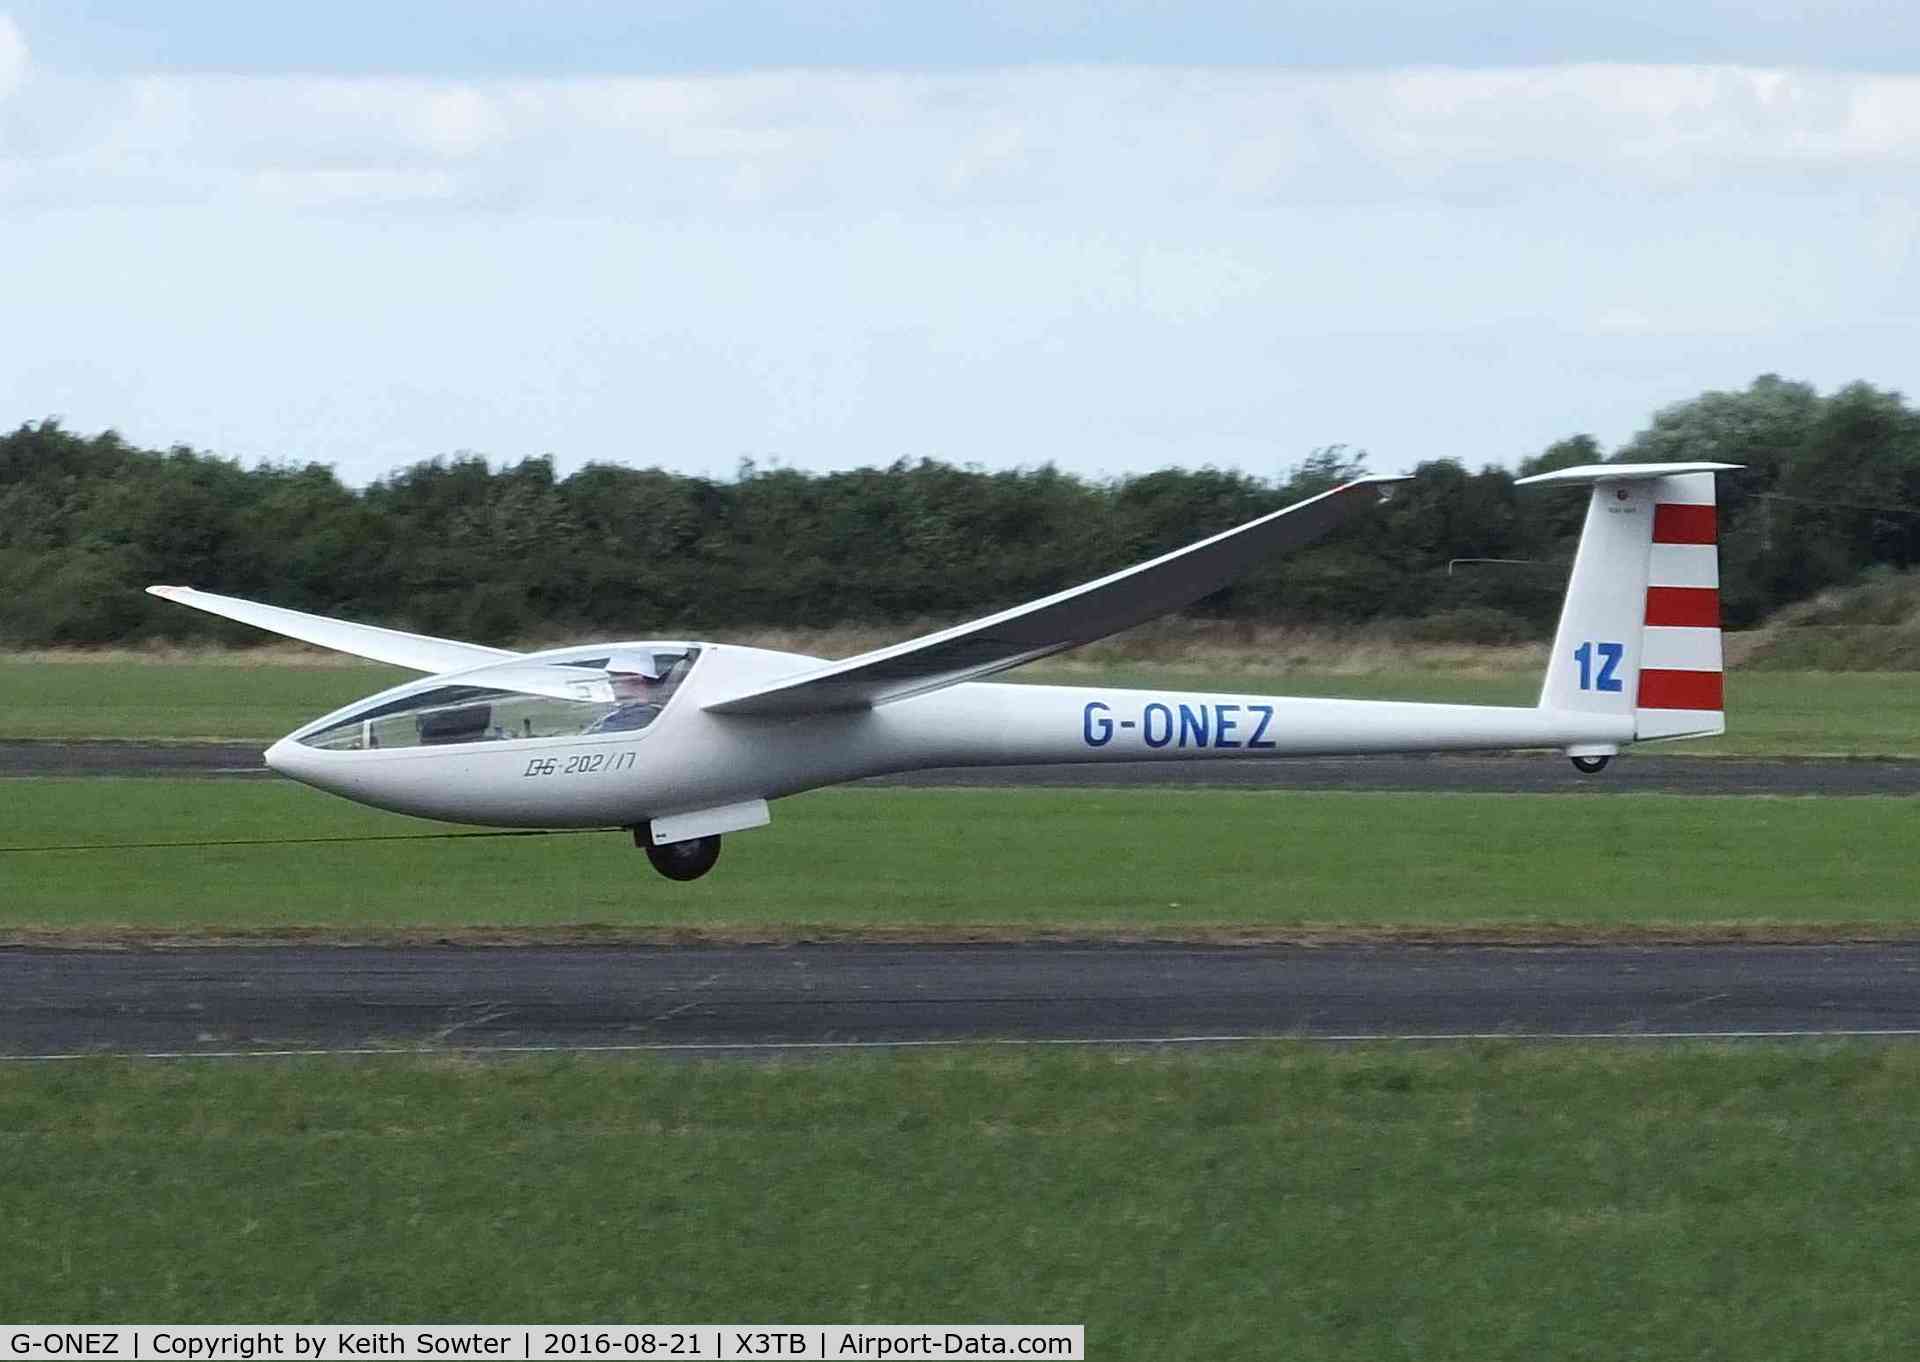 G-ONEZ, 1981 Glaser-Dirks DG-200/17 C/N 2-1431738, Take off